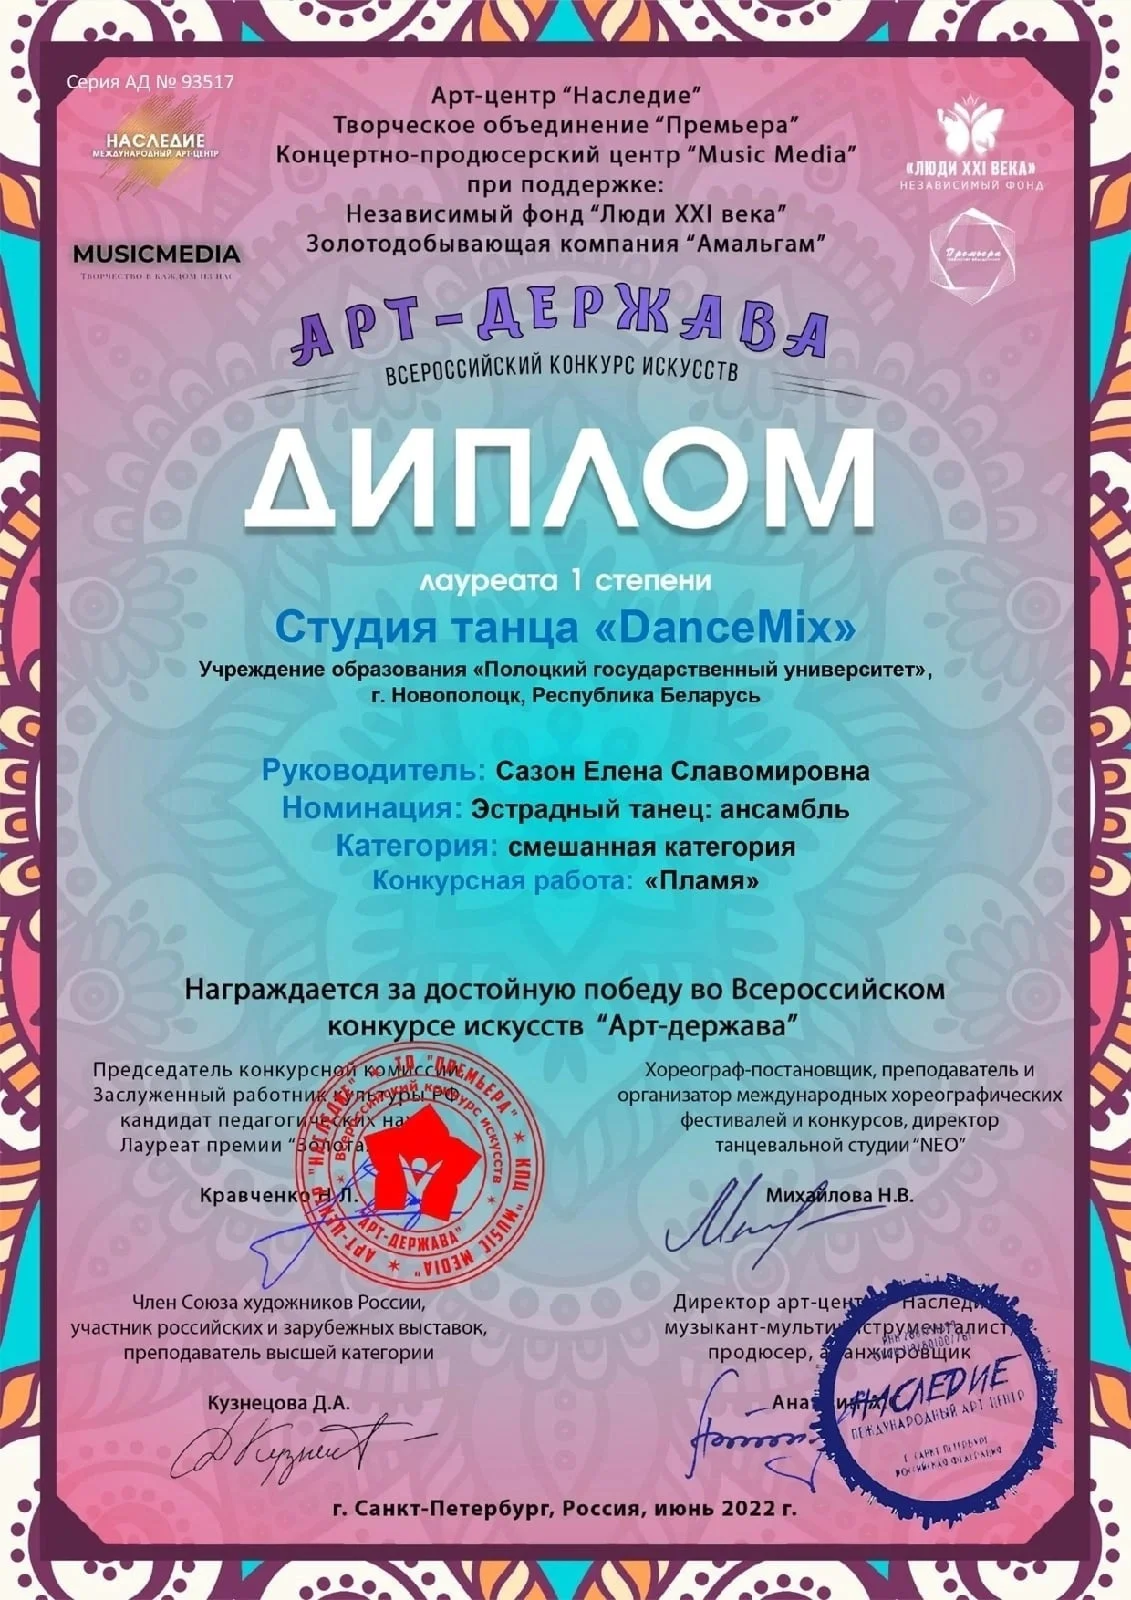 Всероссийский конкурс искусств «Арт-держава»